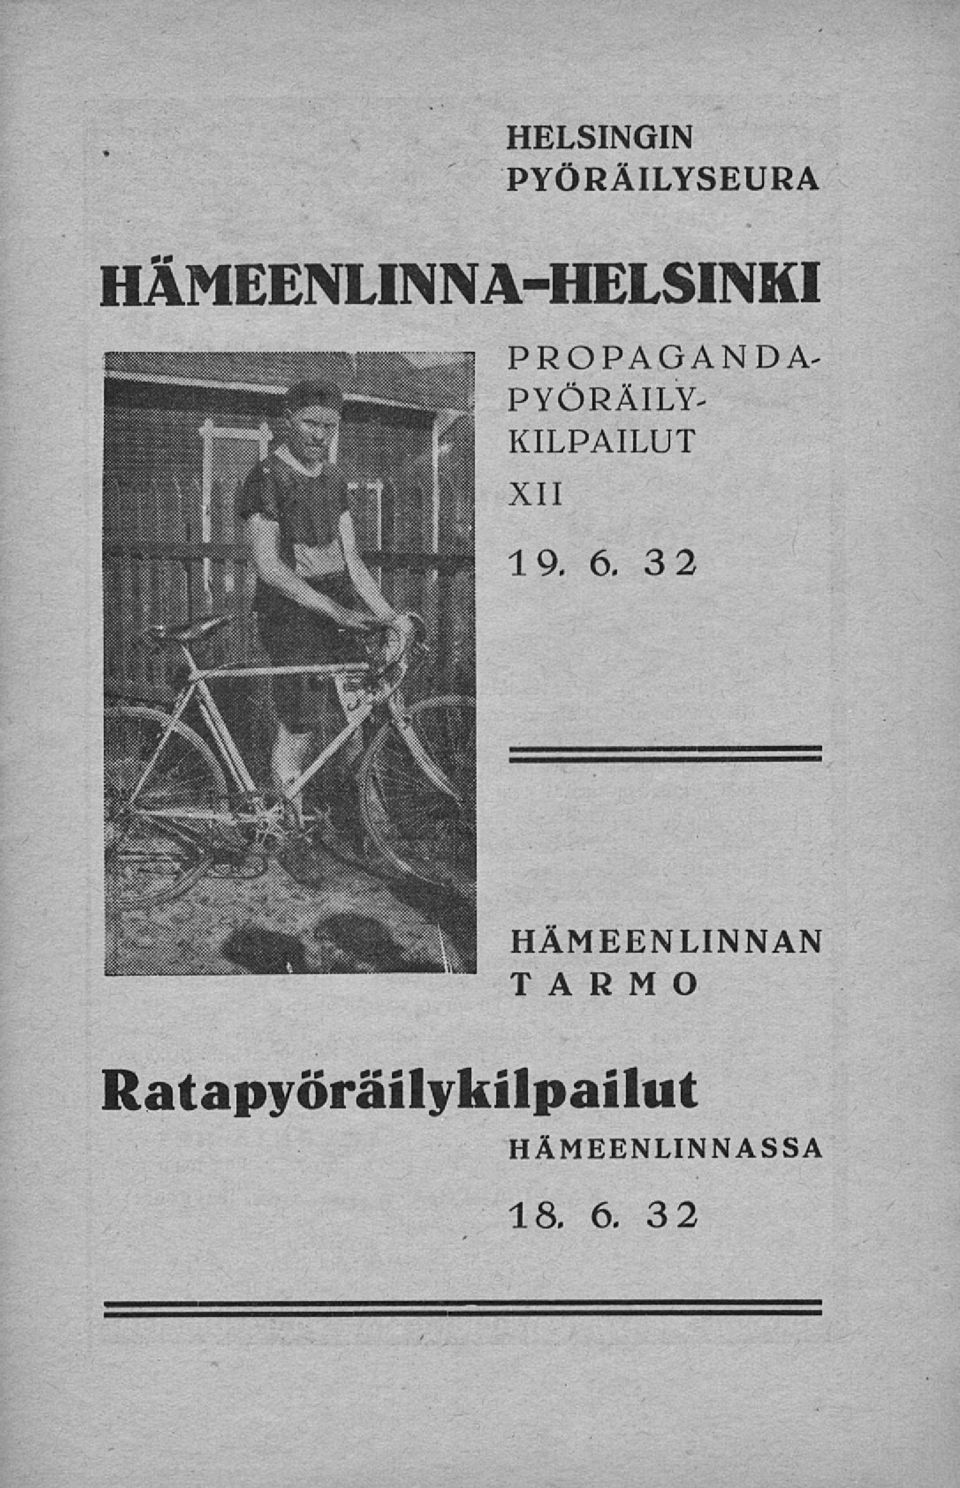 PYÖRÄILY- KILPAILUT XII 19, 6.